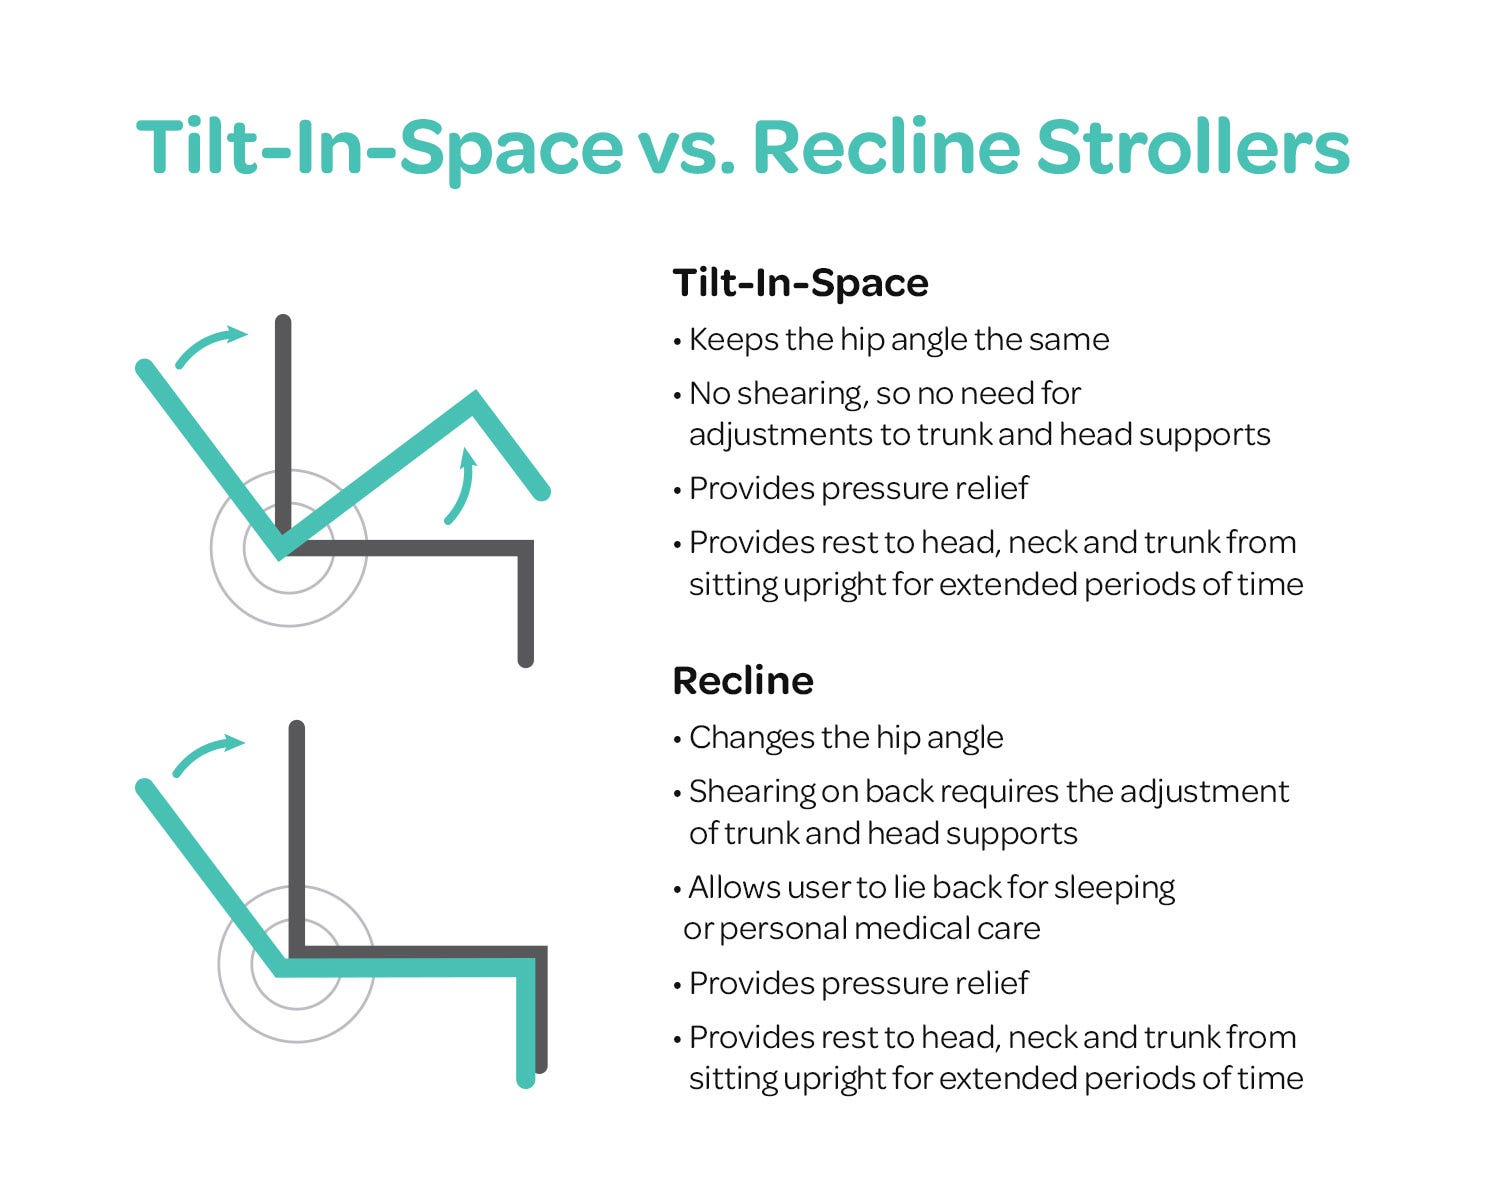 Tilt vs. Recline Stollers